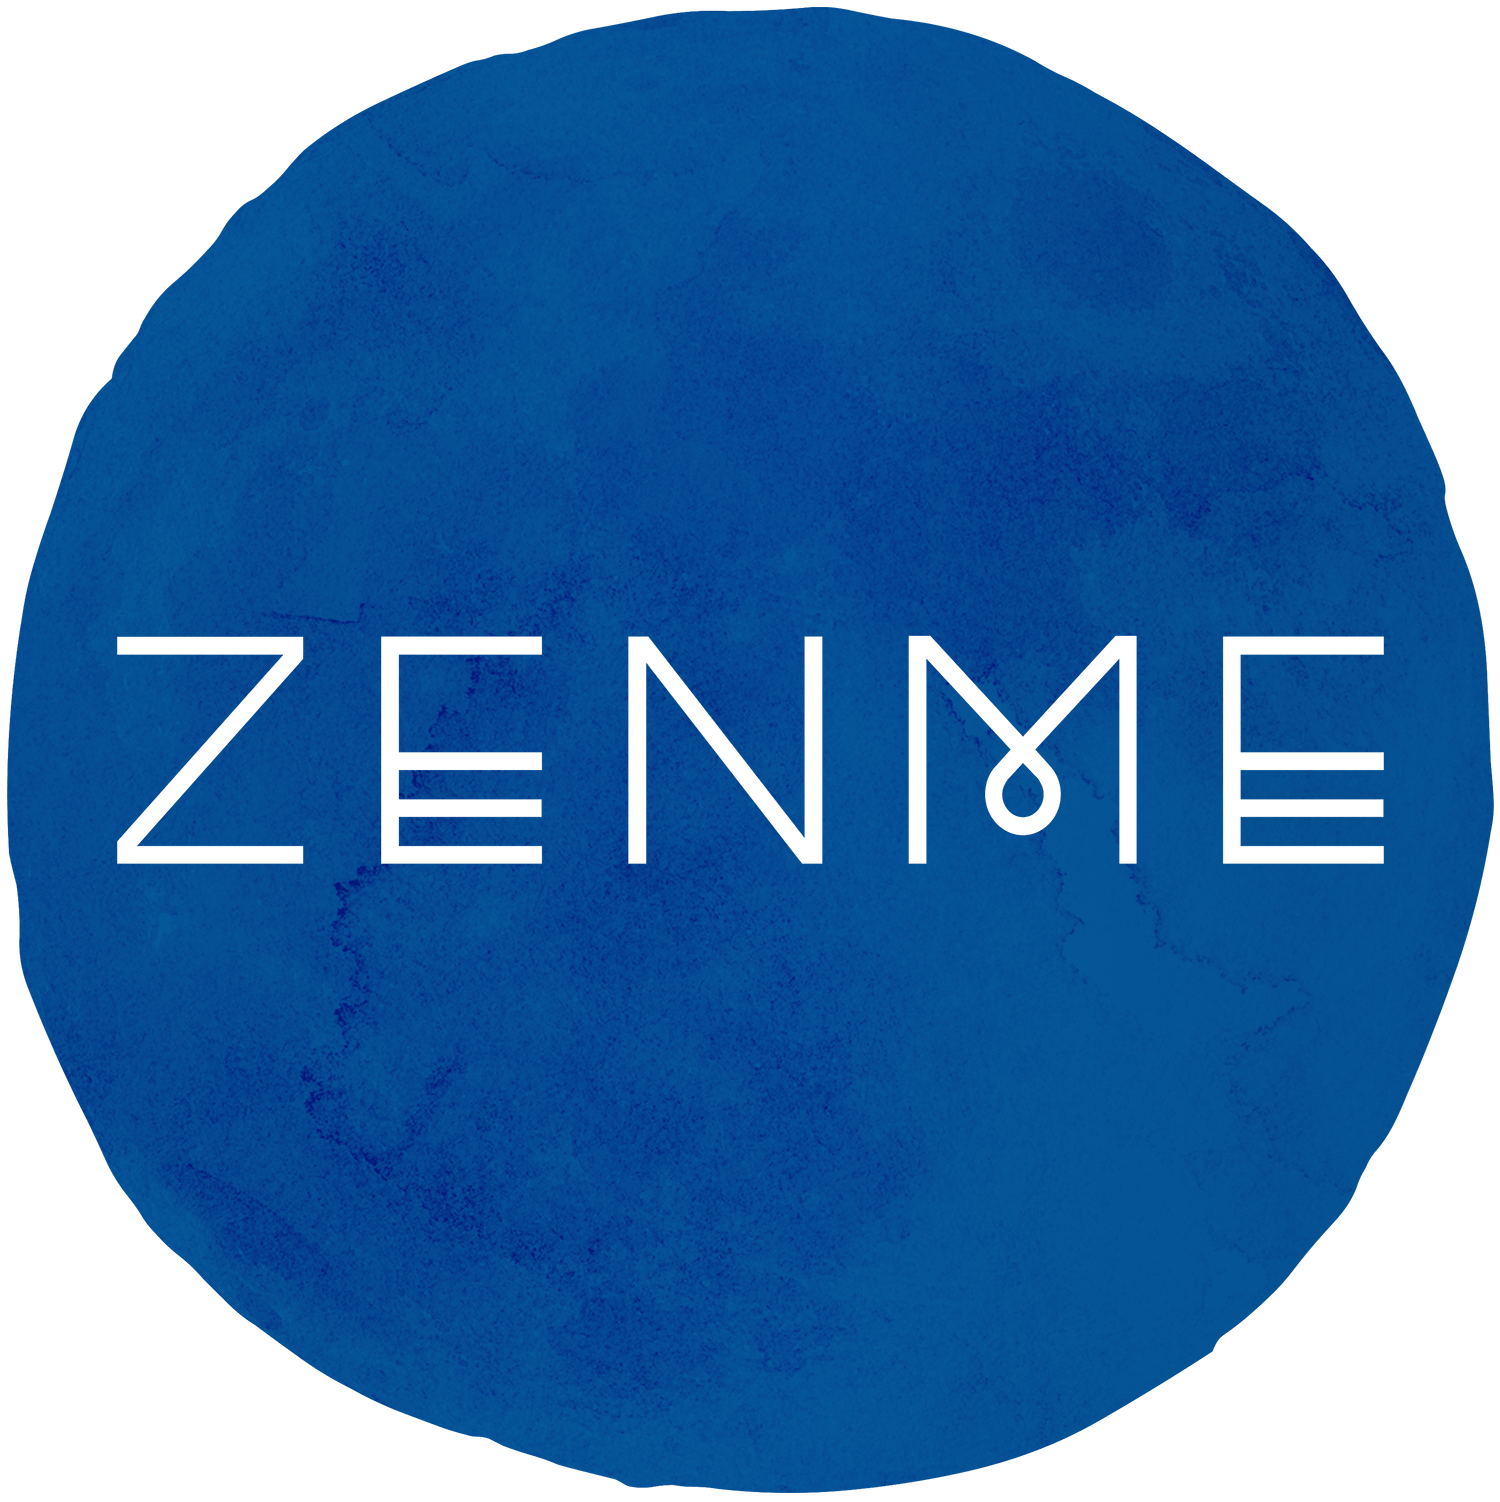 Zenme logo